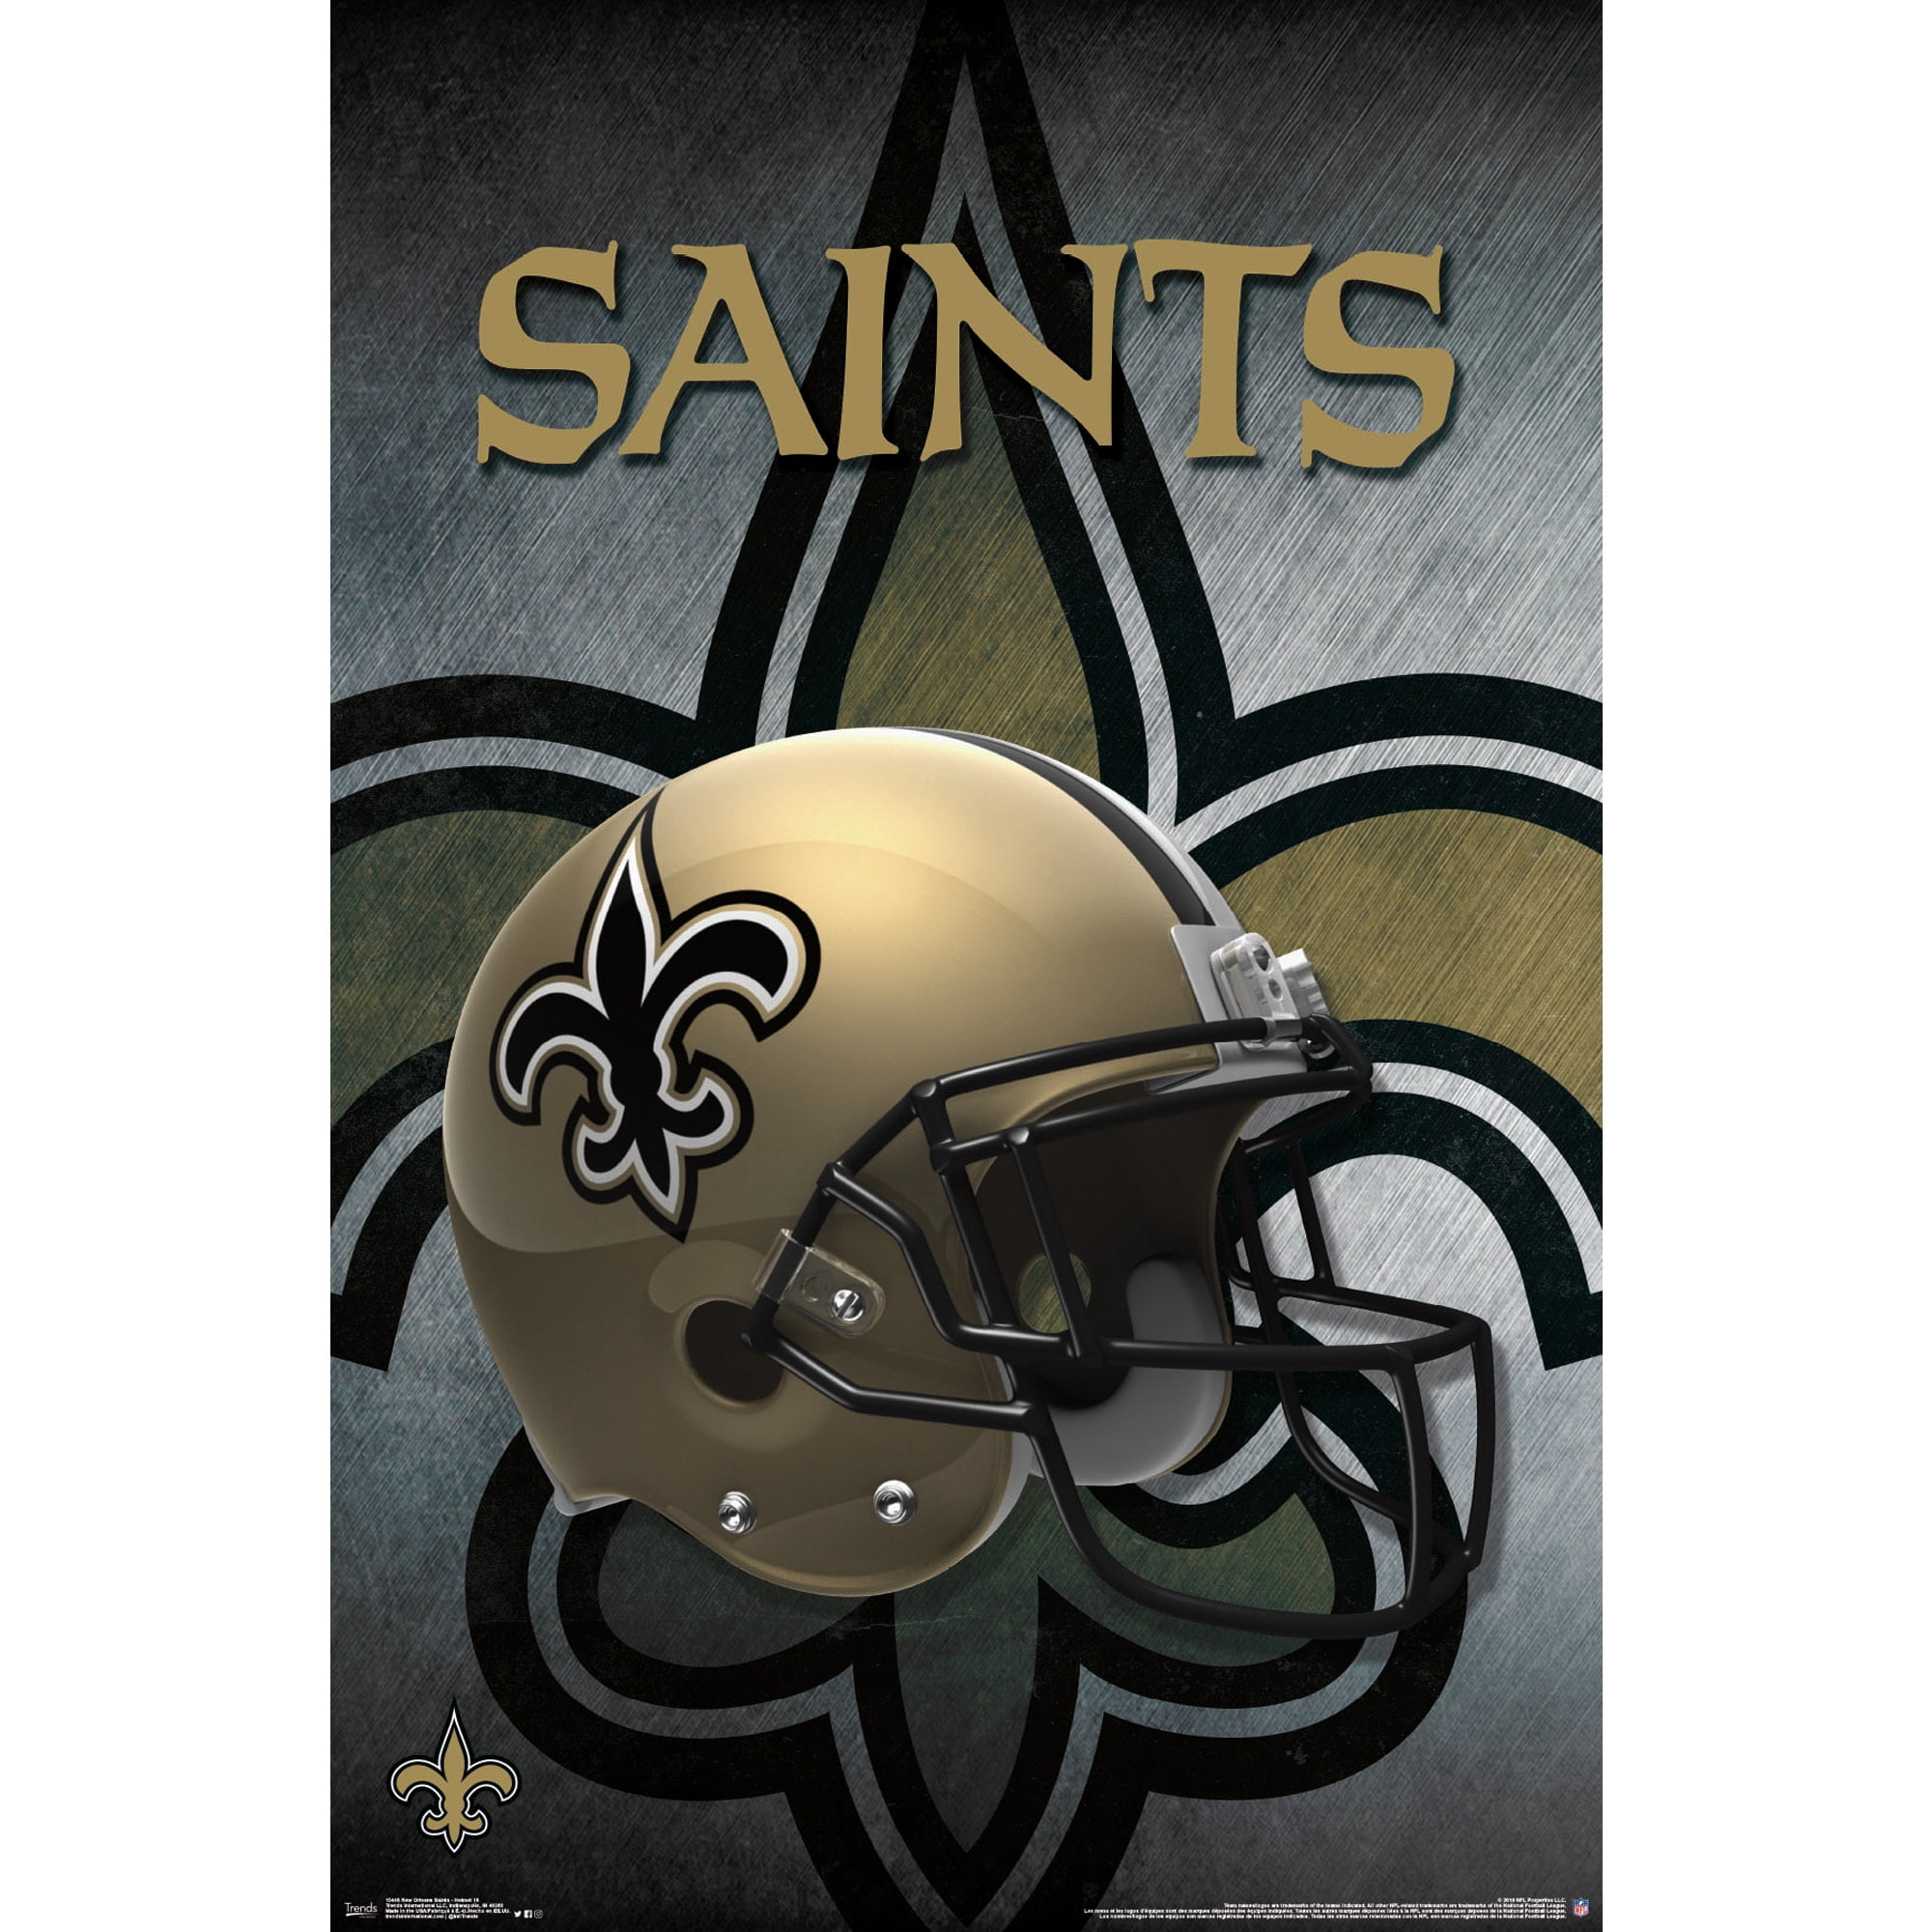 New Orleans Saints Print Retro New Orleans Saints Poster Print Saints Poster New Orleans Saints Art